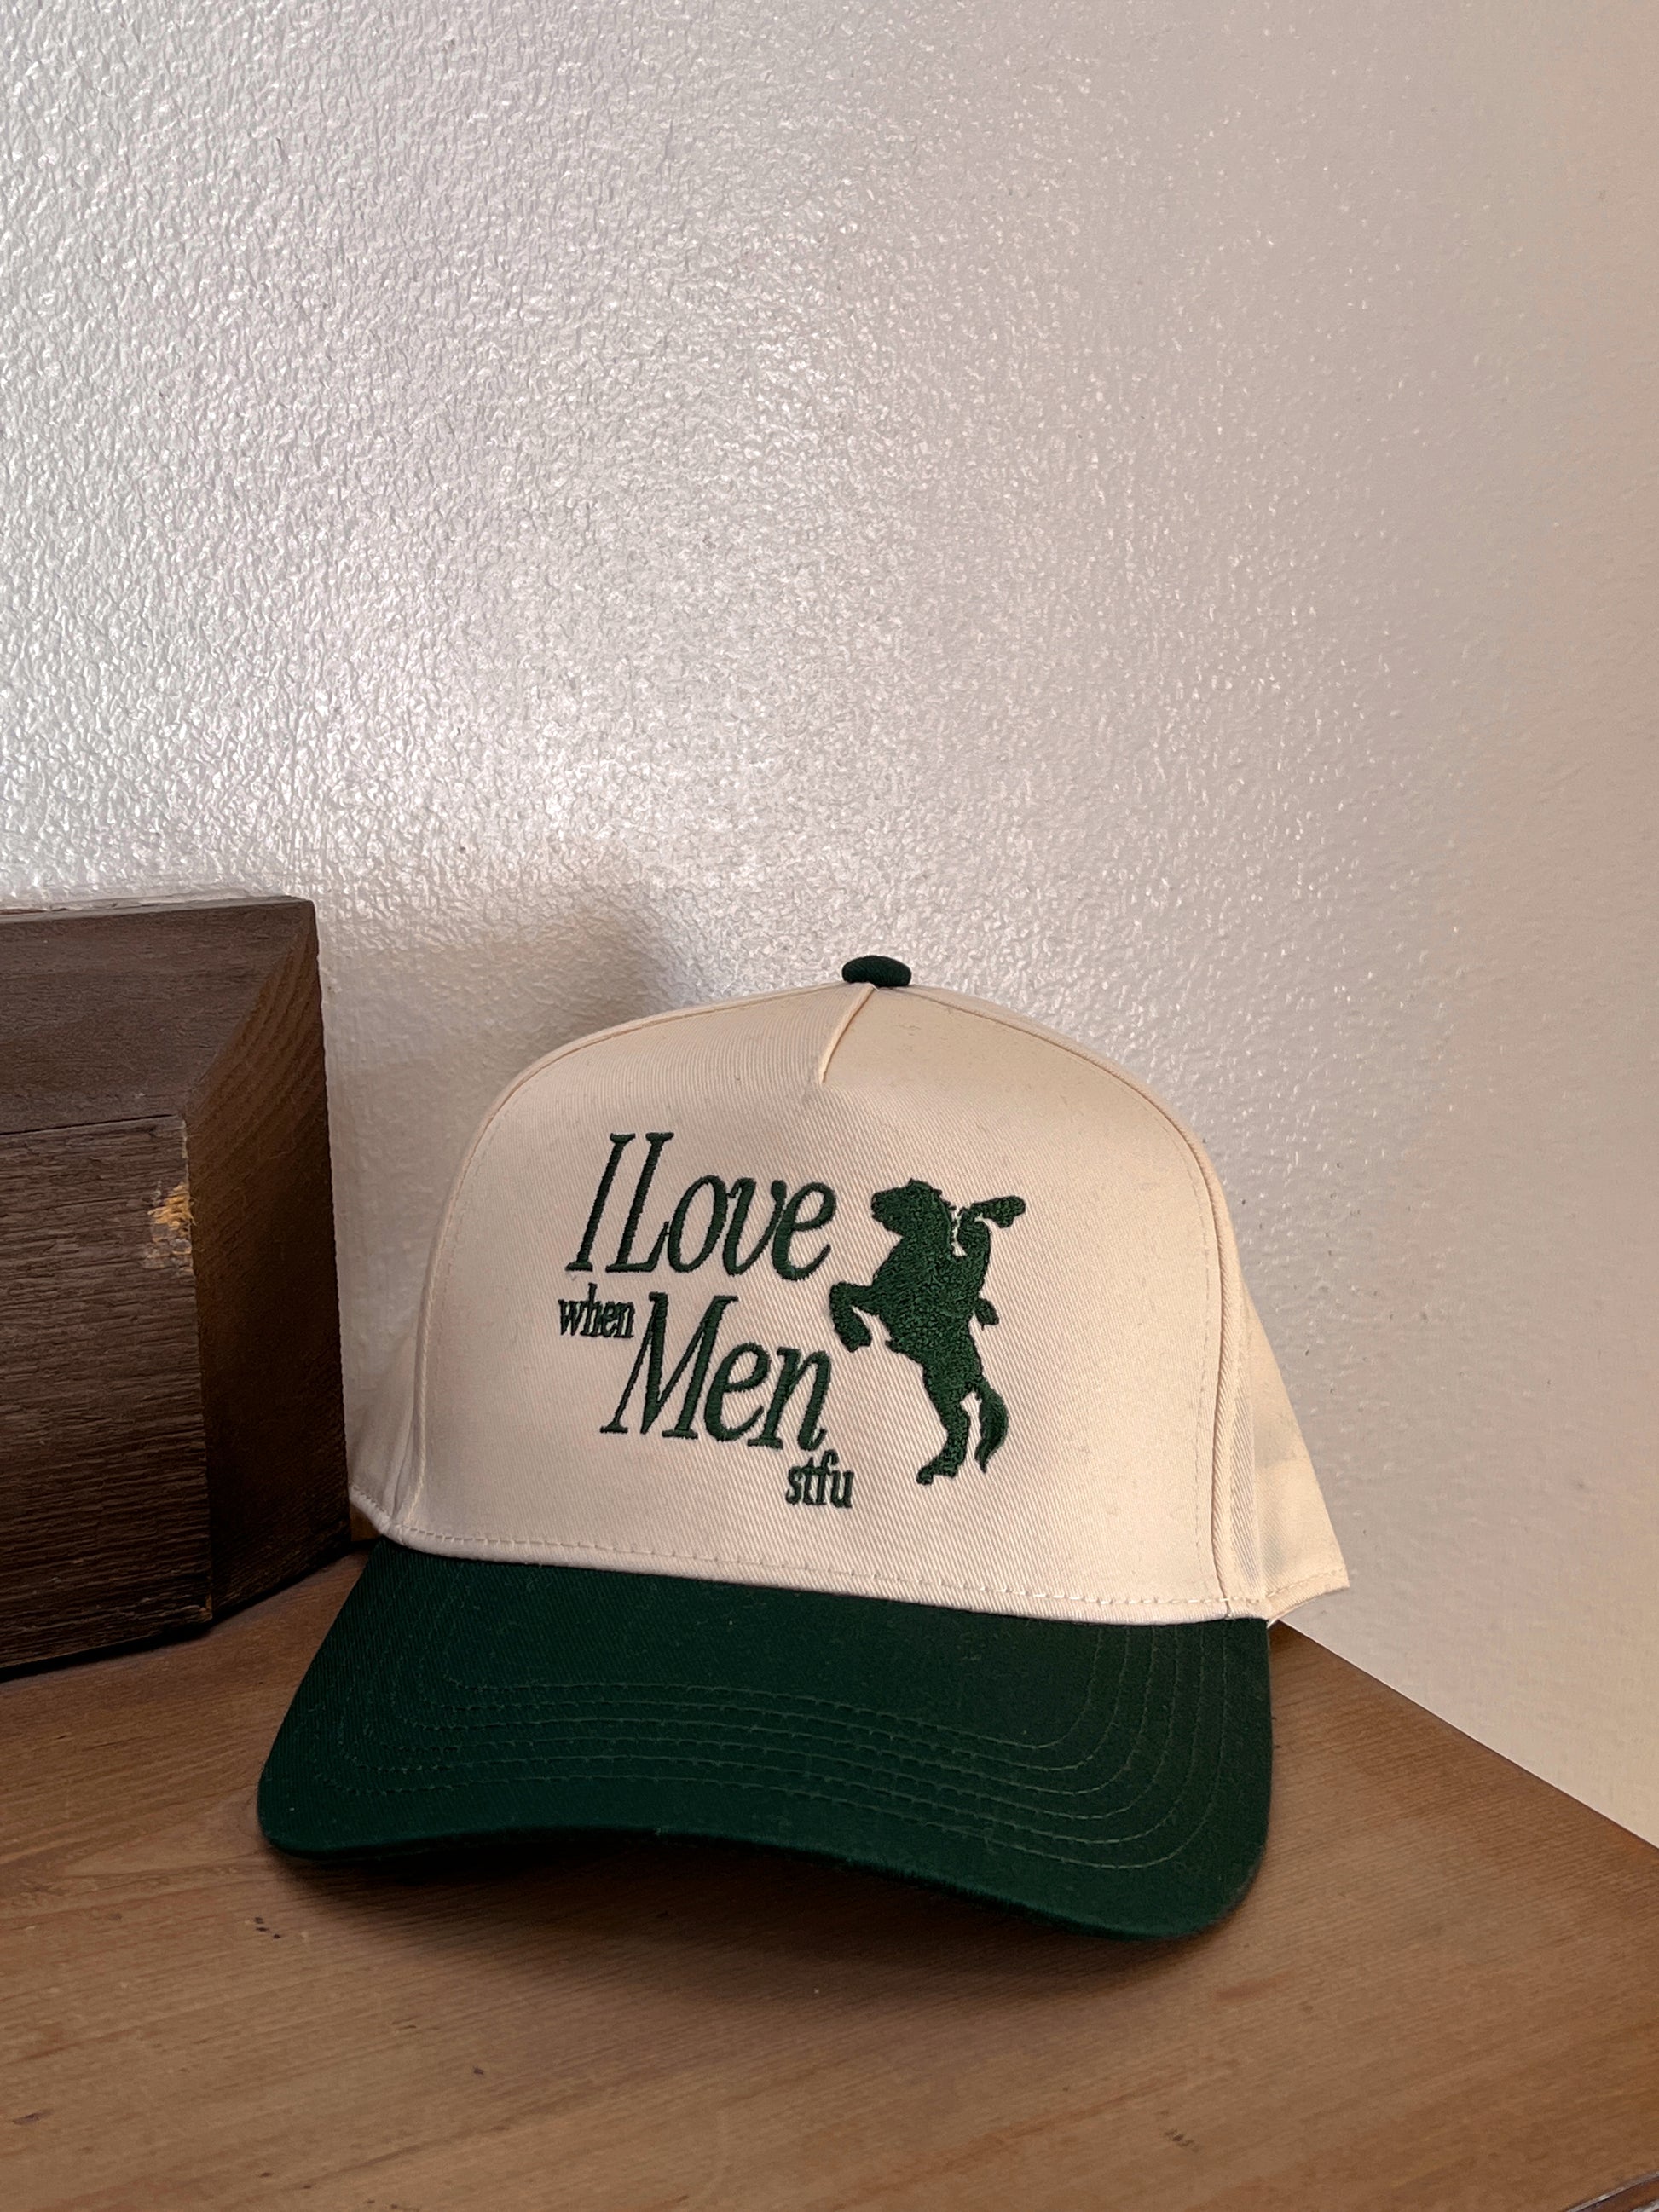 I Love Men Vintage Trucker Hat – Raw & Rebellious